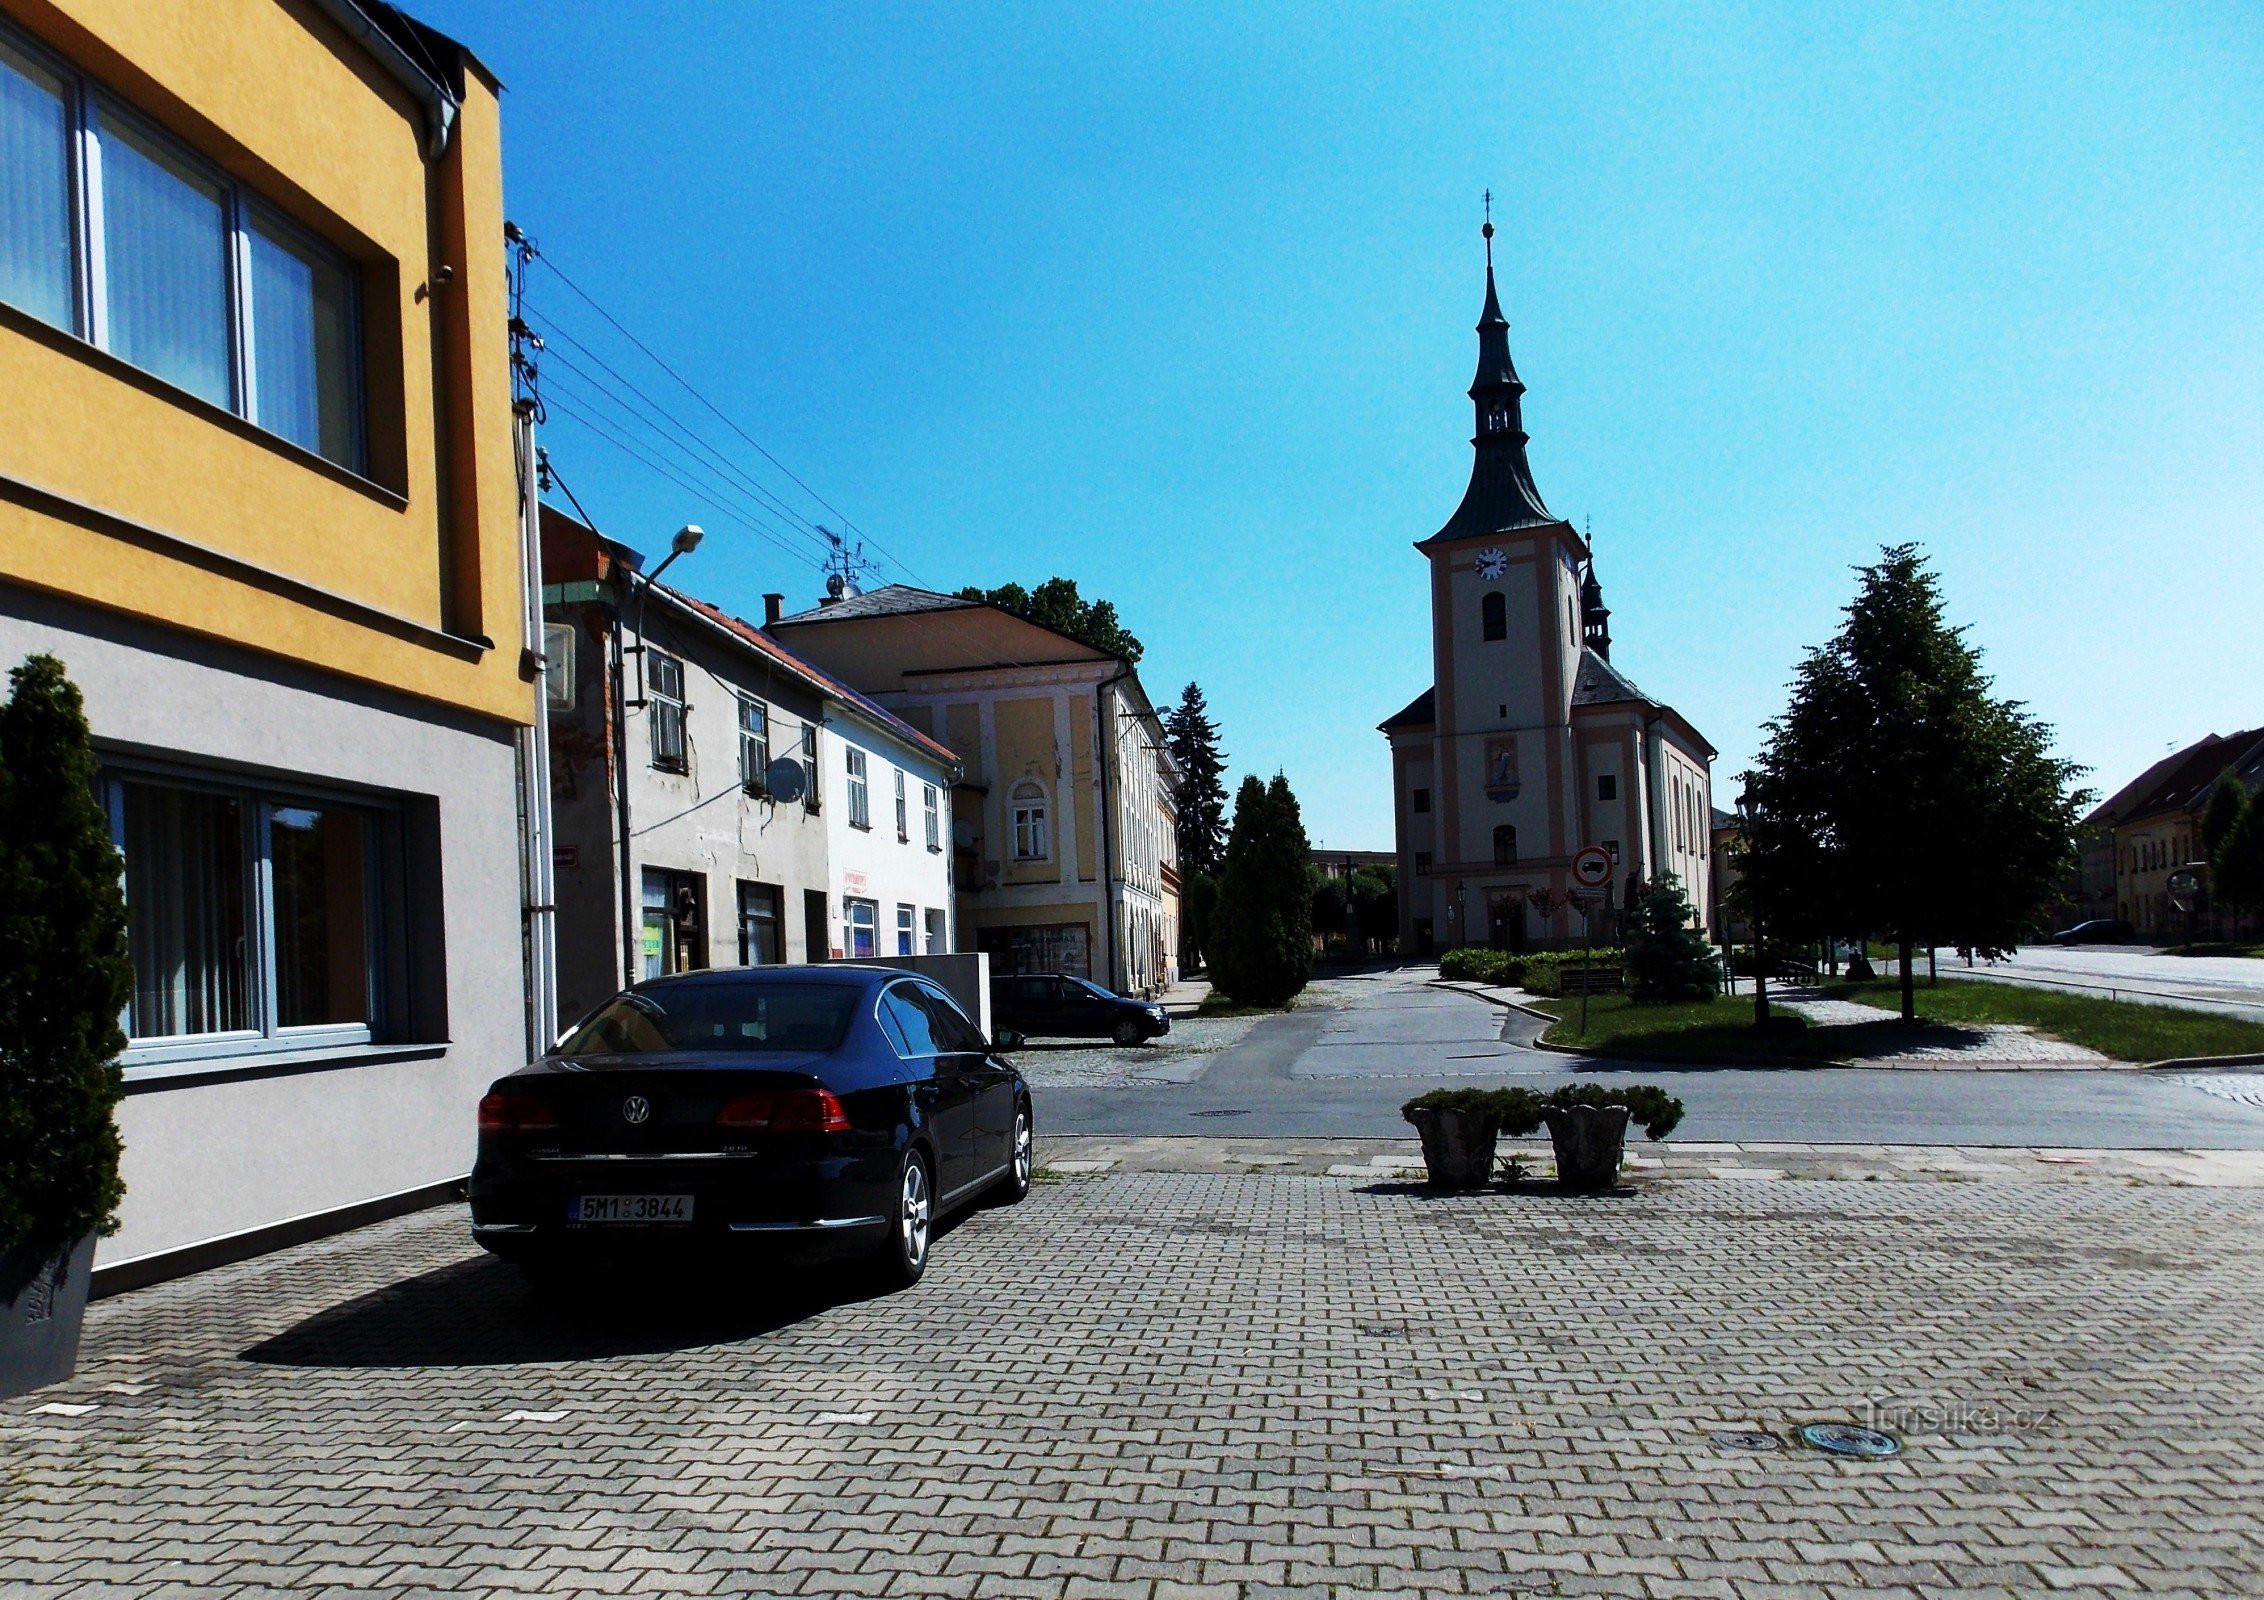 Cunoașterea orașului Drahotuš